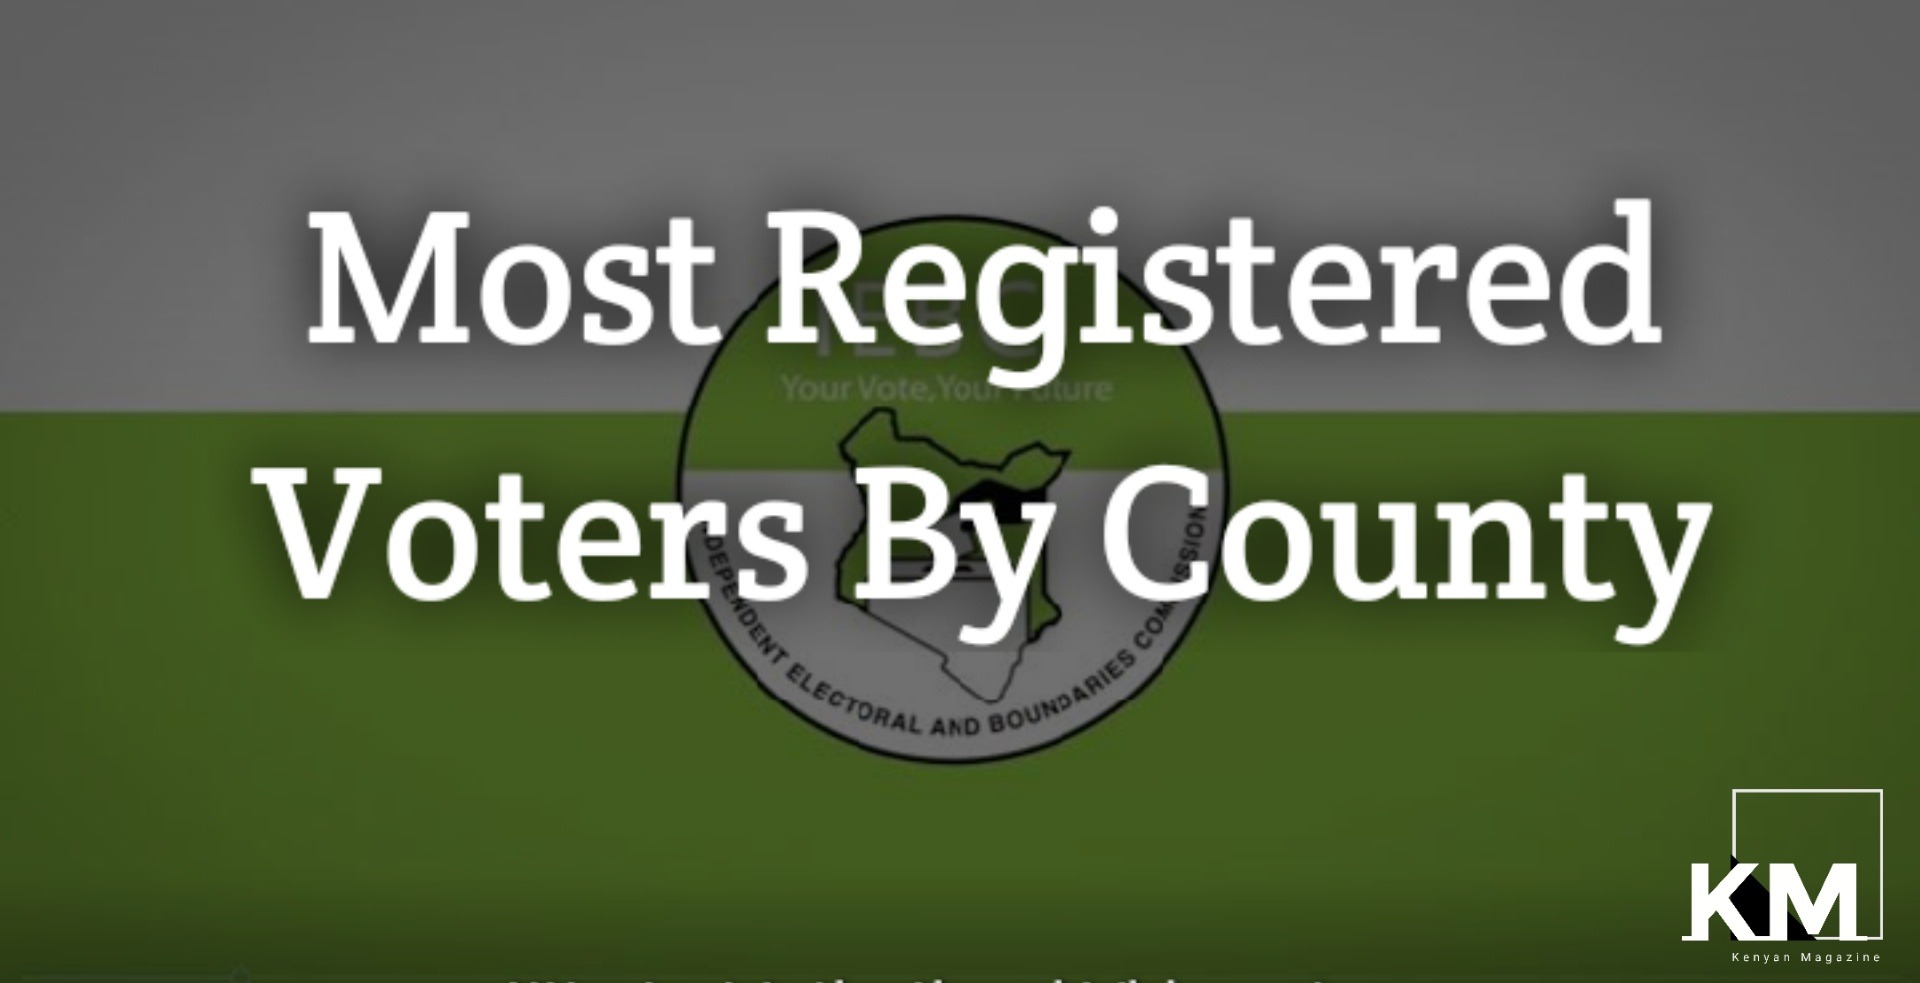 Highest voter registered per county